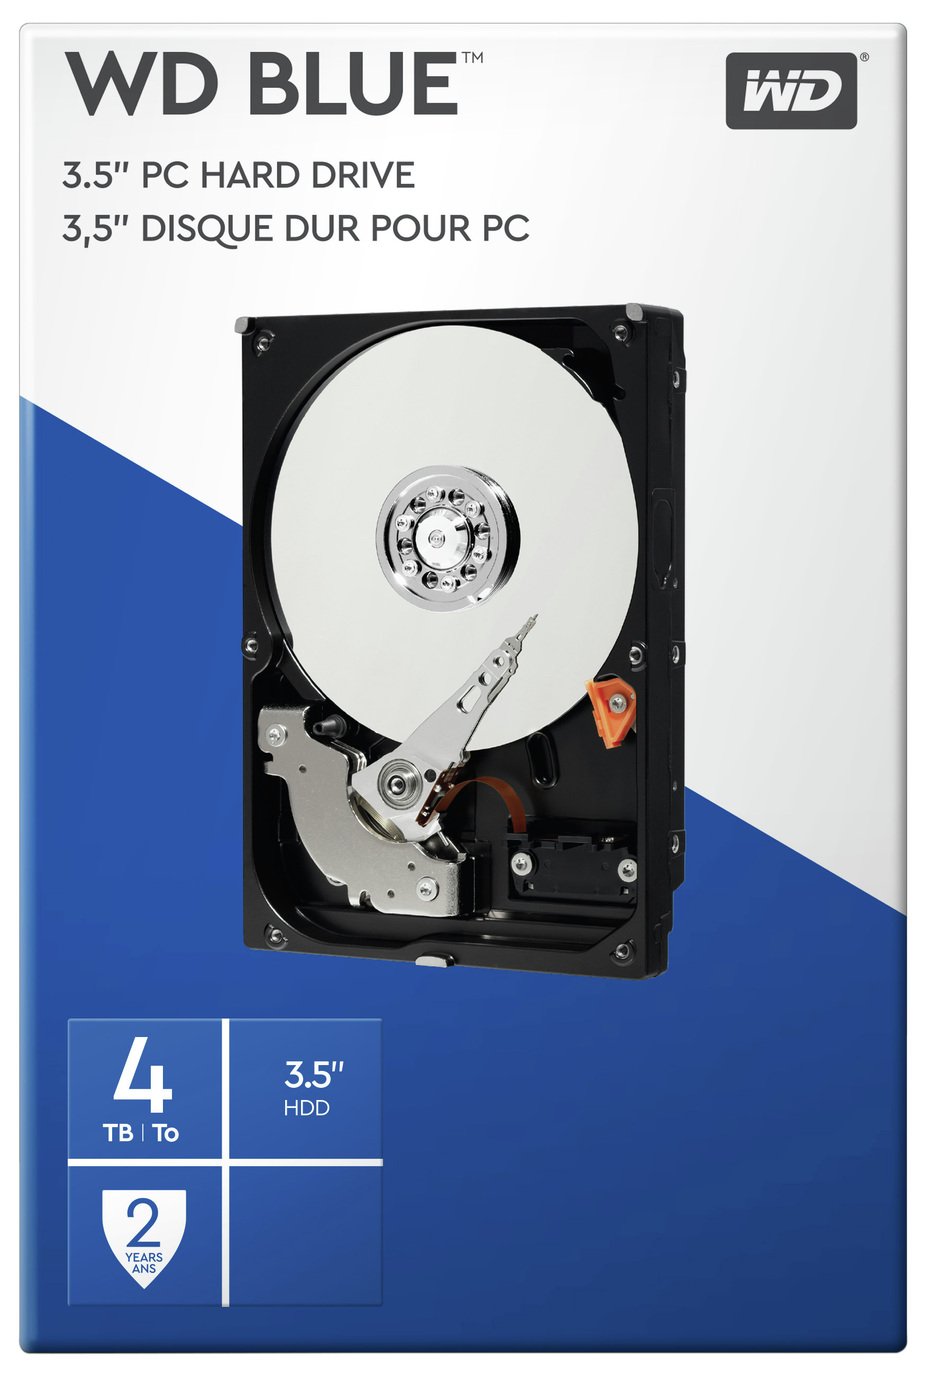 WD Blue 4TB PC Hard Drive